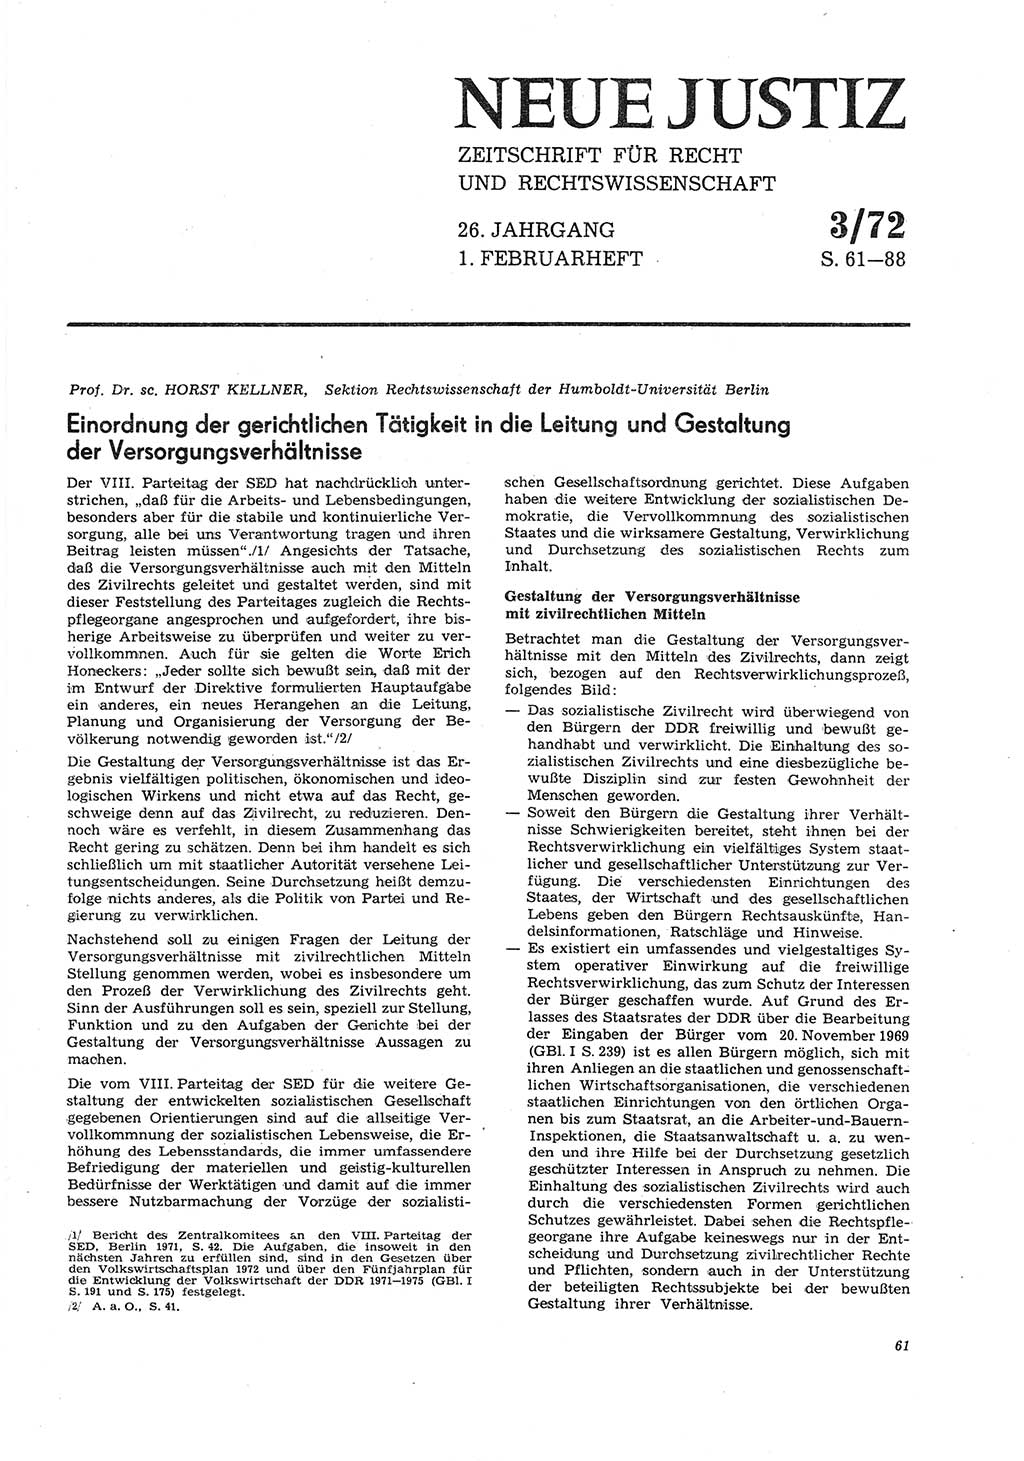 Neue Justiz (NJ), Zeitschrift für Recht und Rechtswissenschaft [Deutsche Demokratische Republik (DDR)], 26. Jahrgang 1972, Seite 61 (NJ DDR 1972, S. 61)